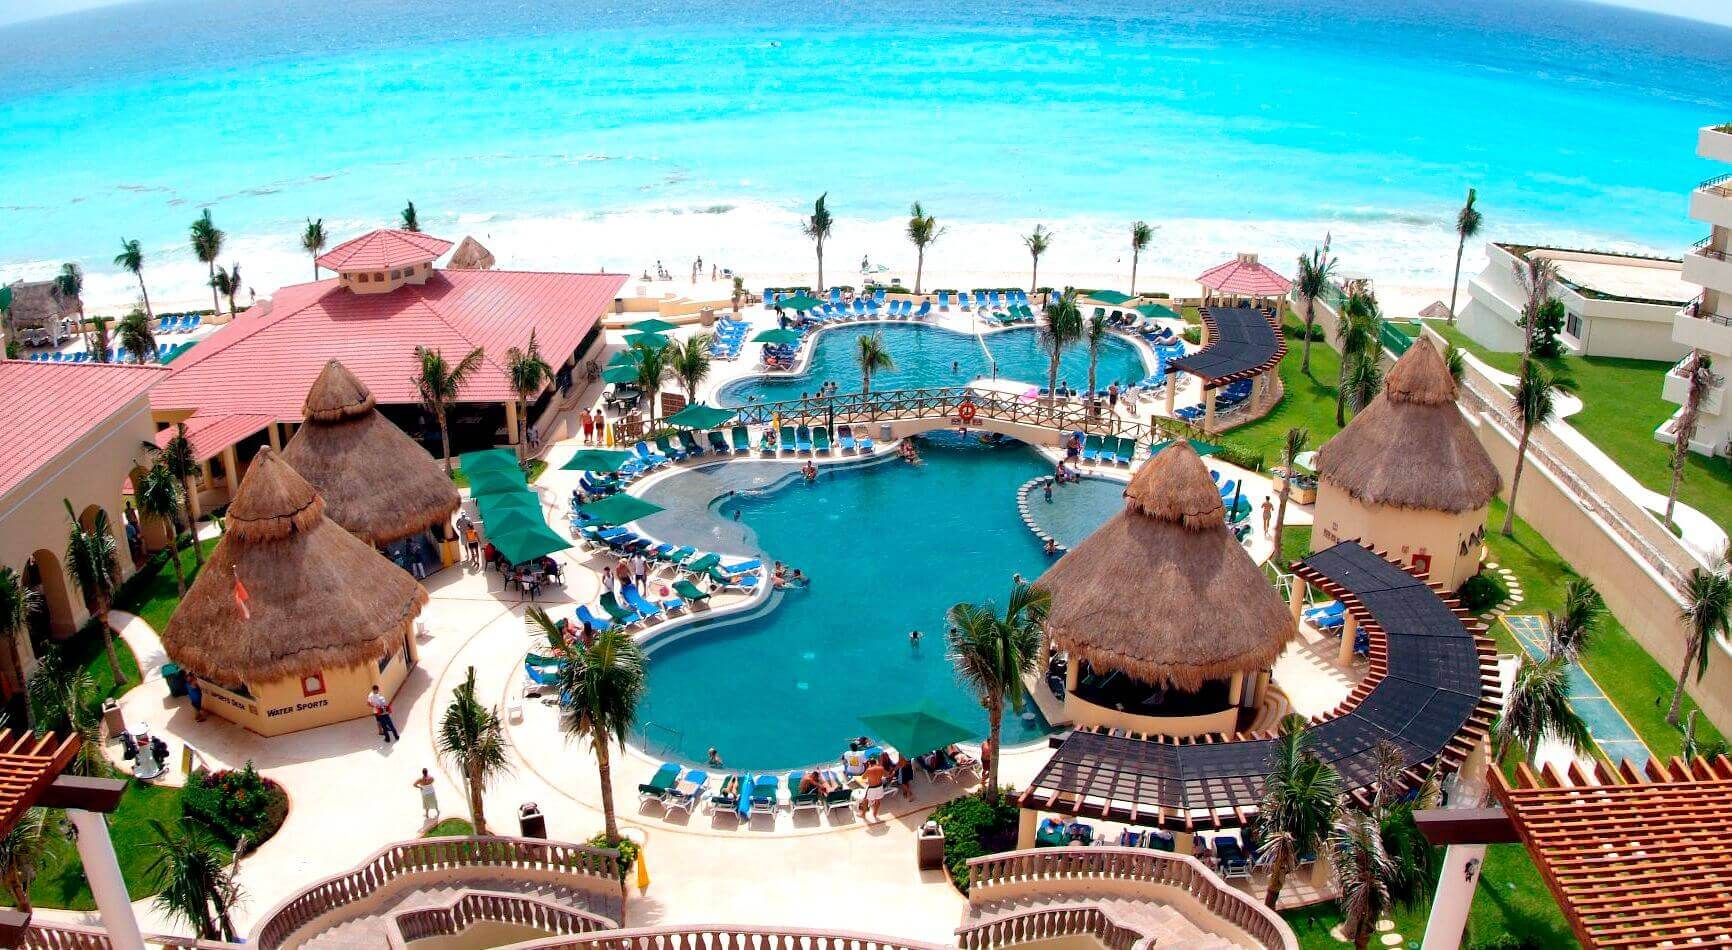 Hoteles económicos en Cancún todo incluido | Hoteles Cancún